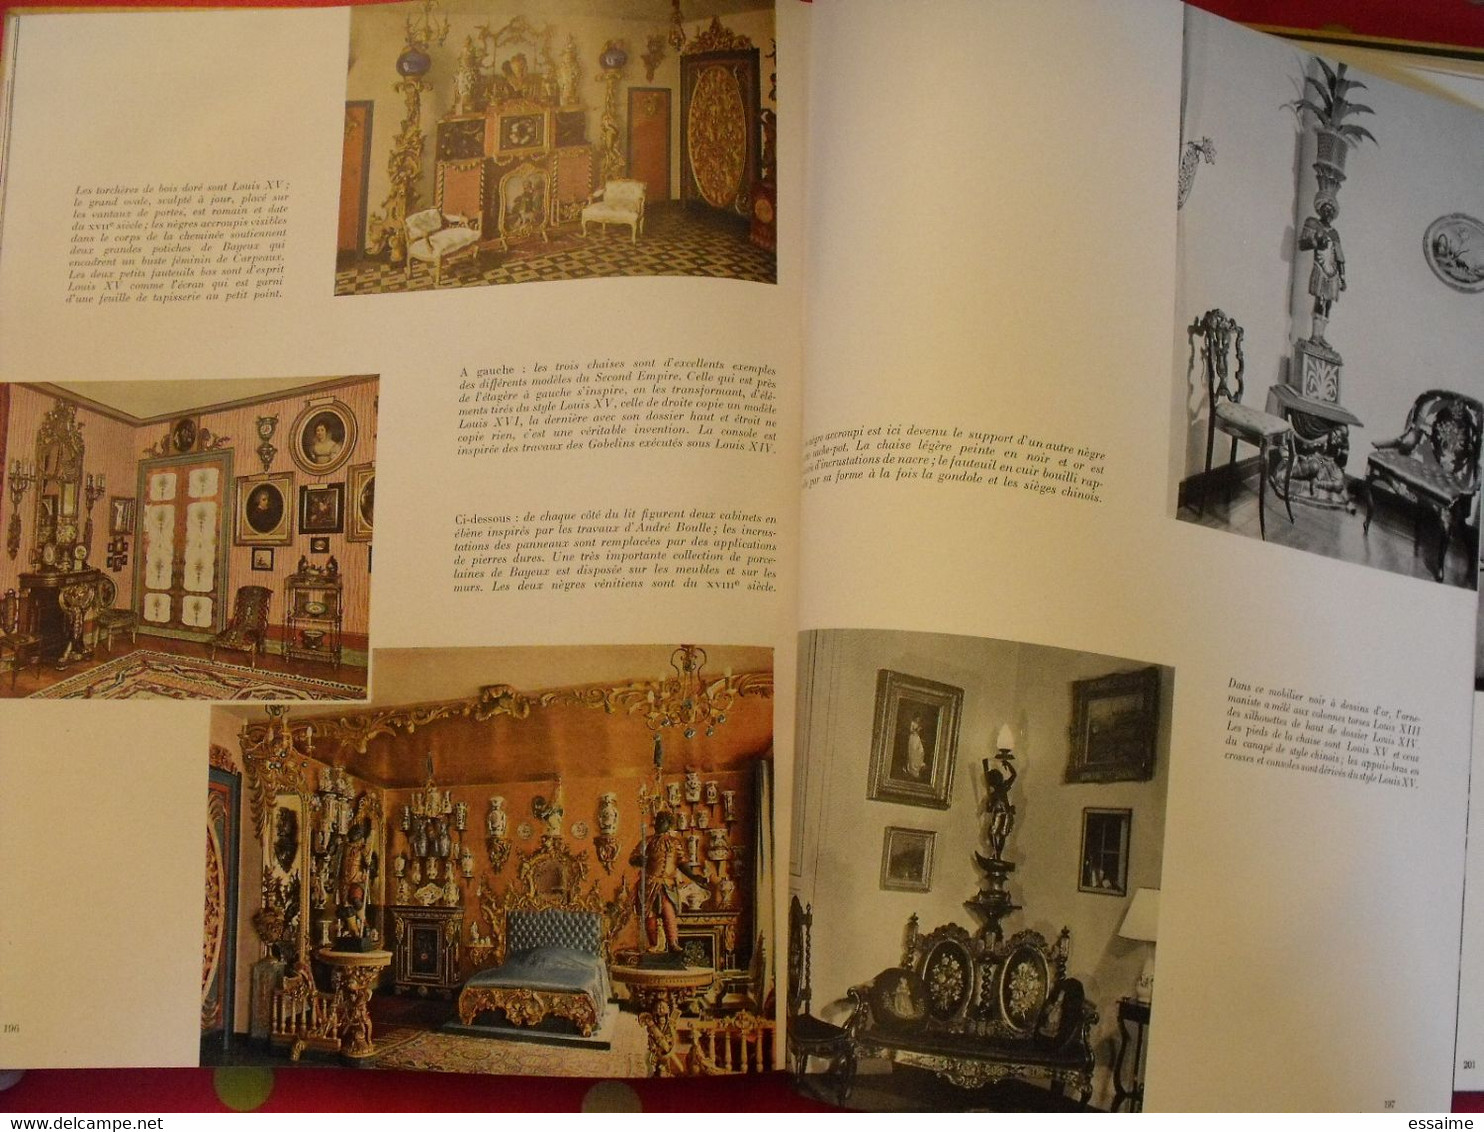 styles de France "meubles et ensembles". plaisir de france vers 1950-60. très illustré. beau livre avec emboitage